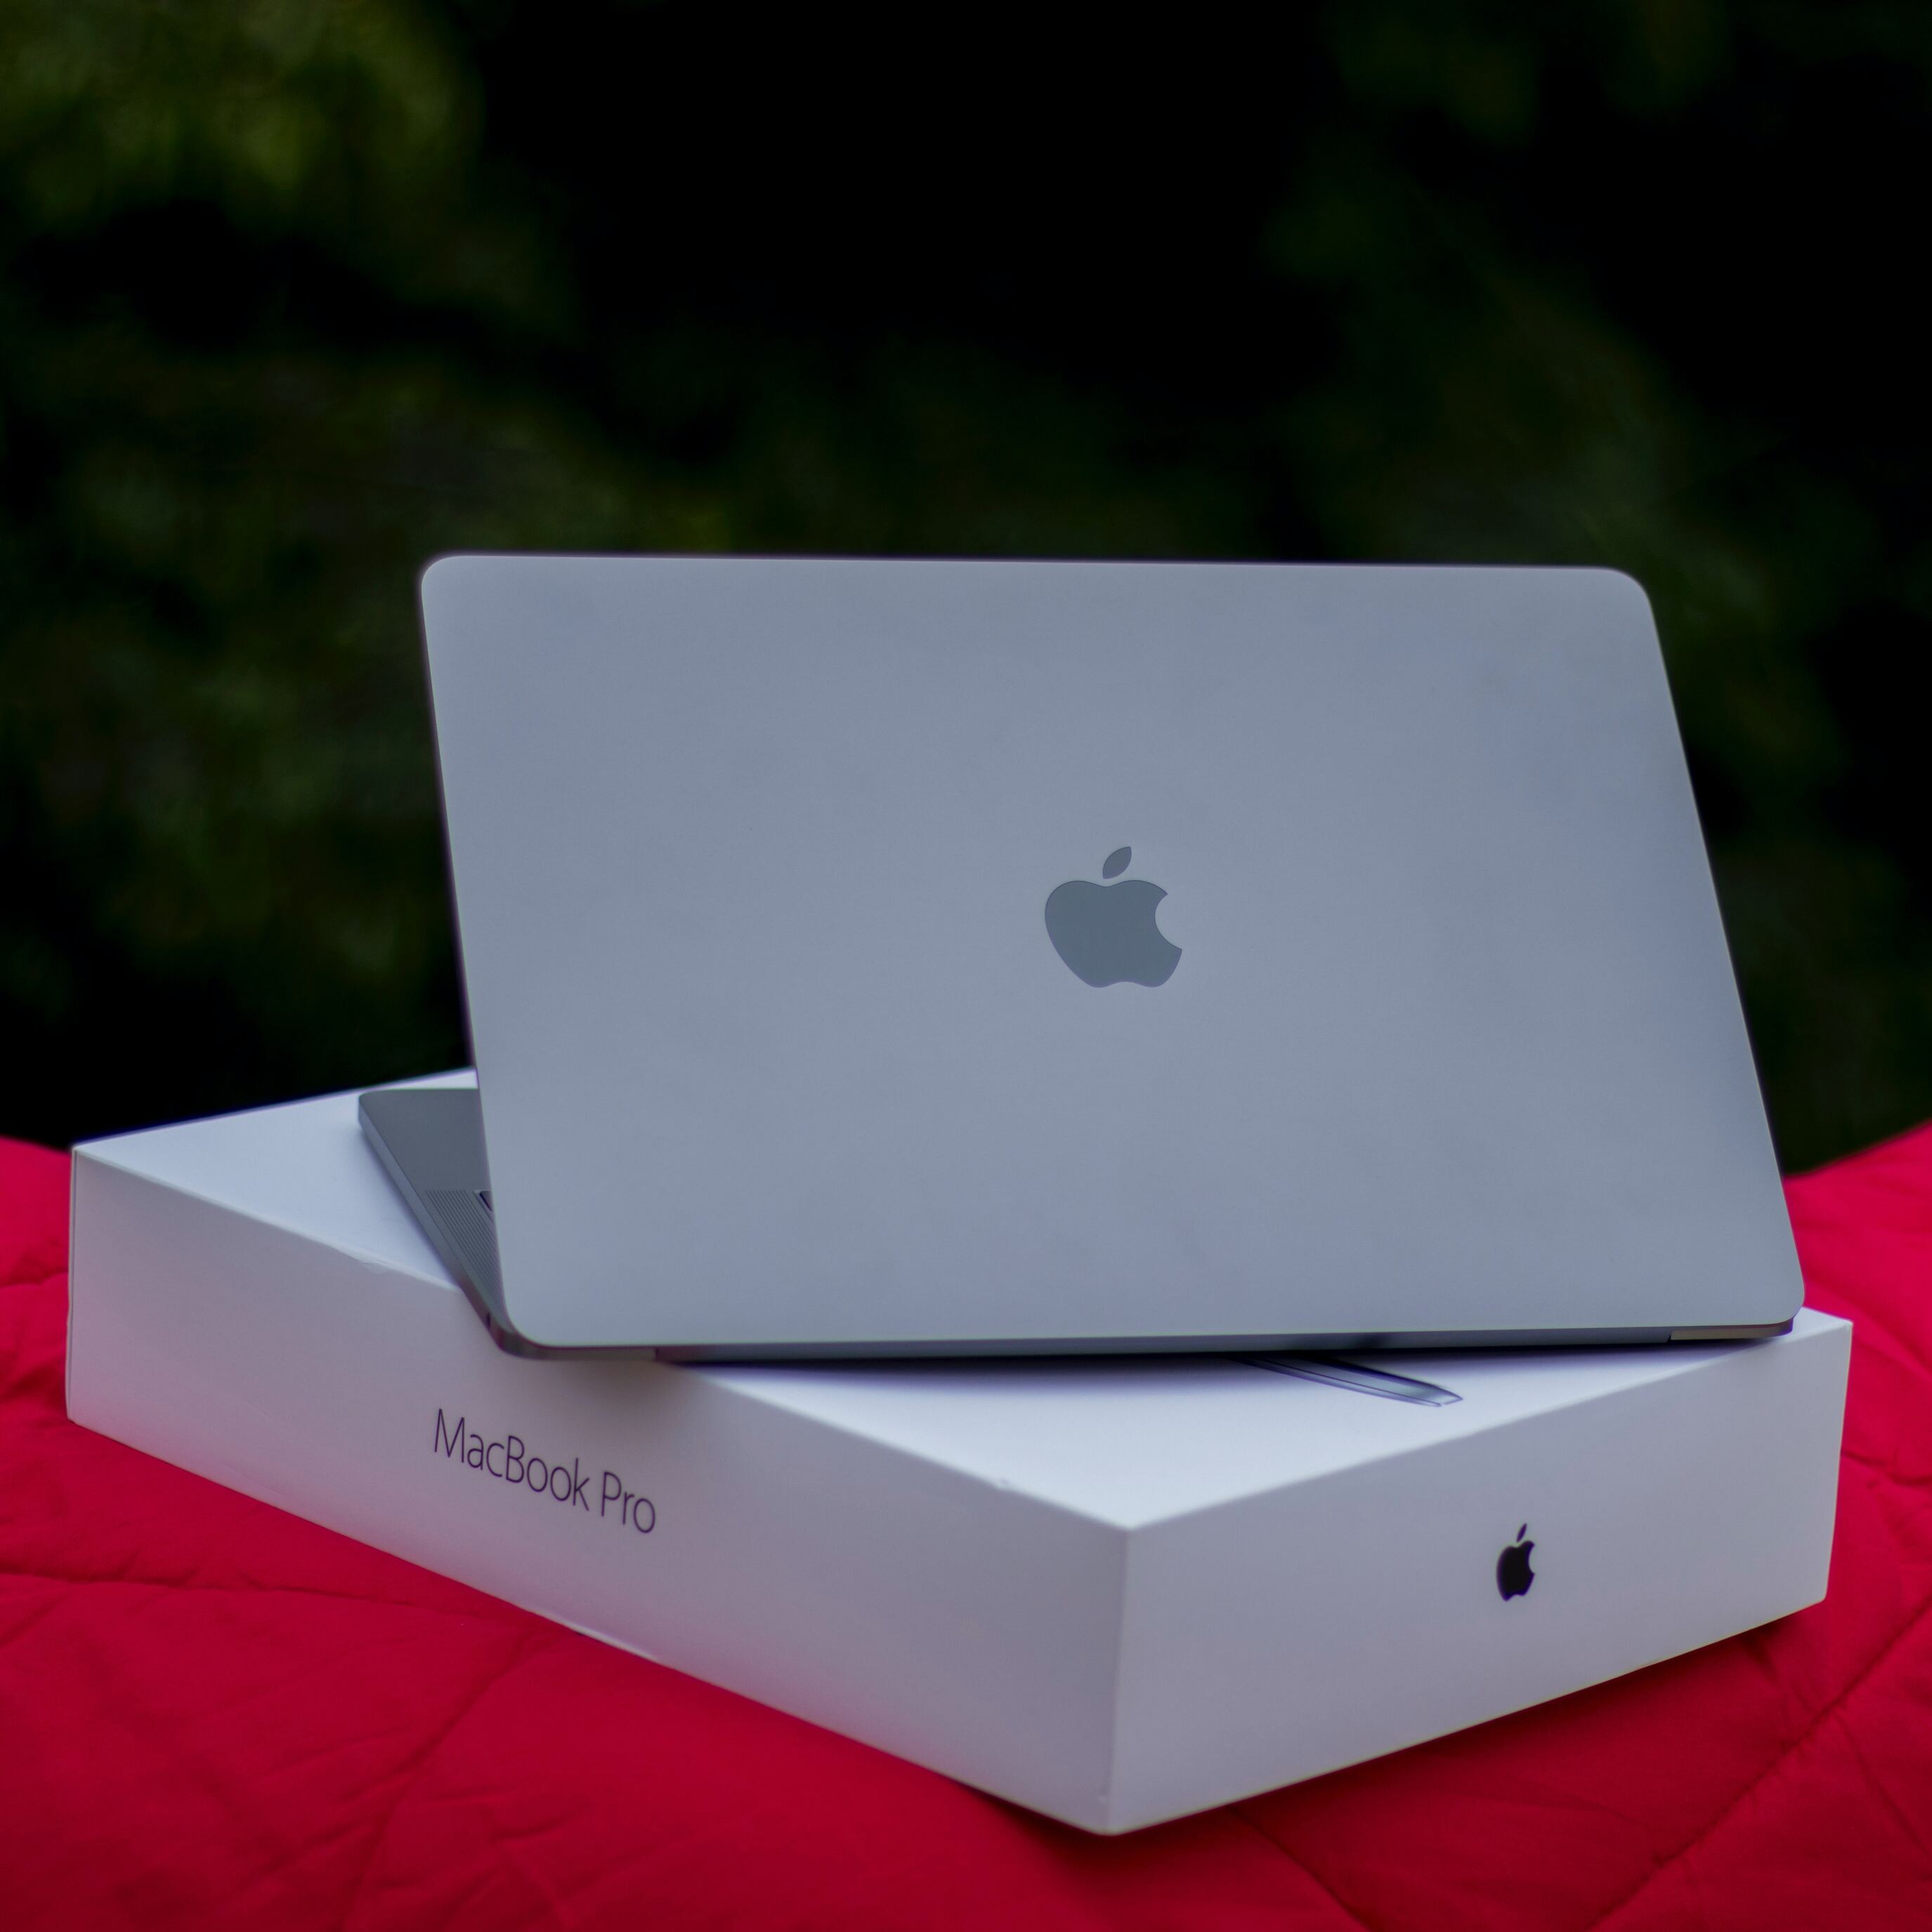  macbook pro     apple 